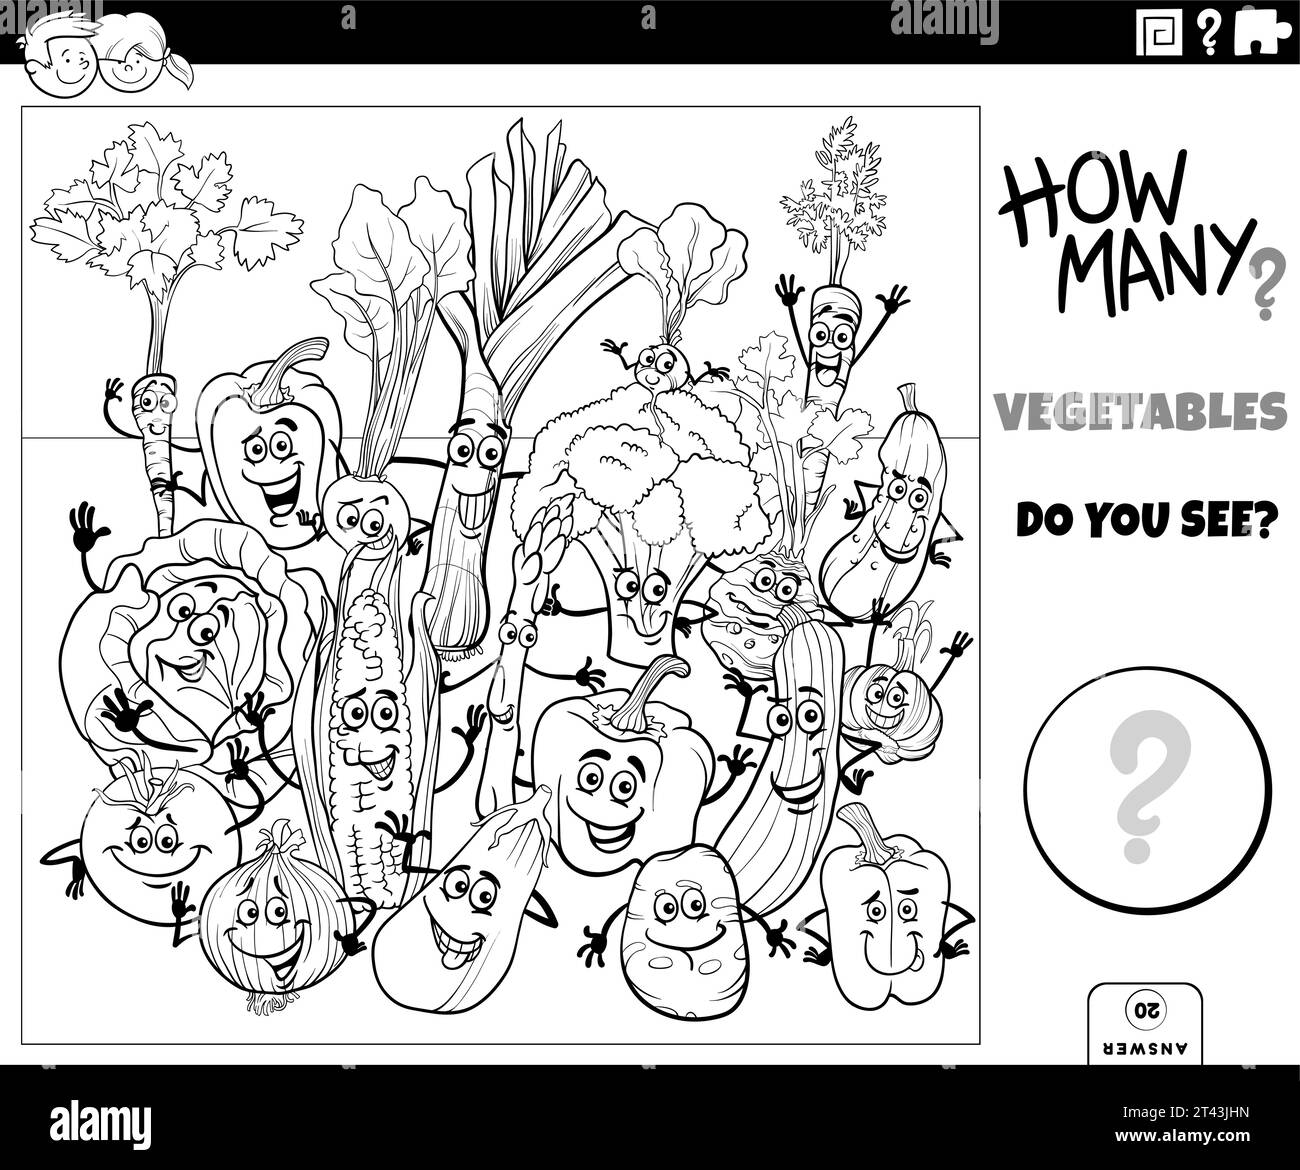 Illustrazione in bianco e nero dell'attività di conteggio educativo con la pagina da colorare dei personaggi delle verdure dei cartoni animati Illustrazione Vettoriale